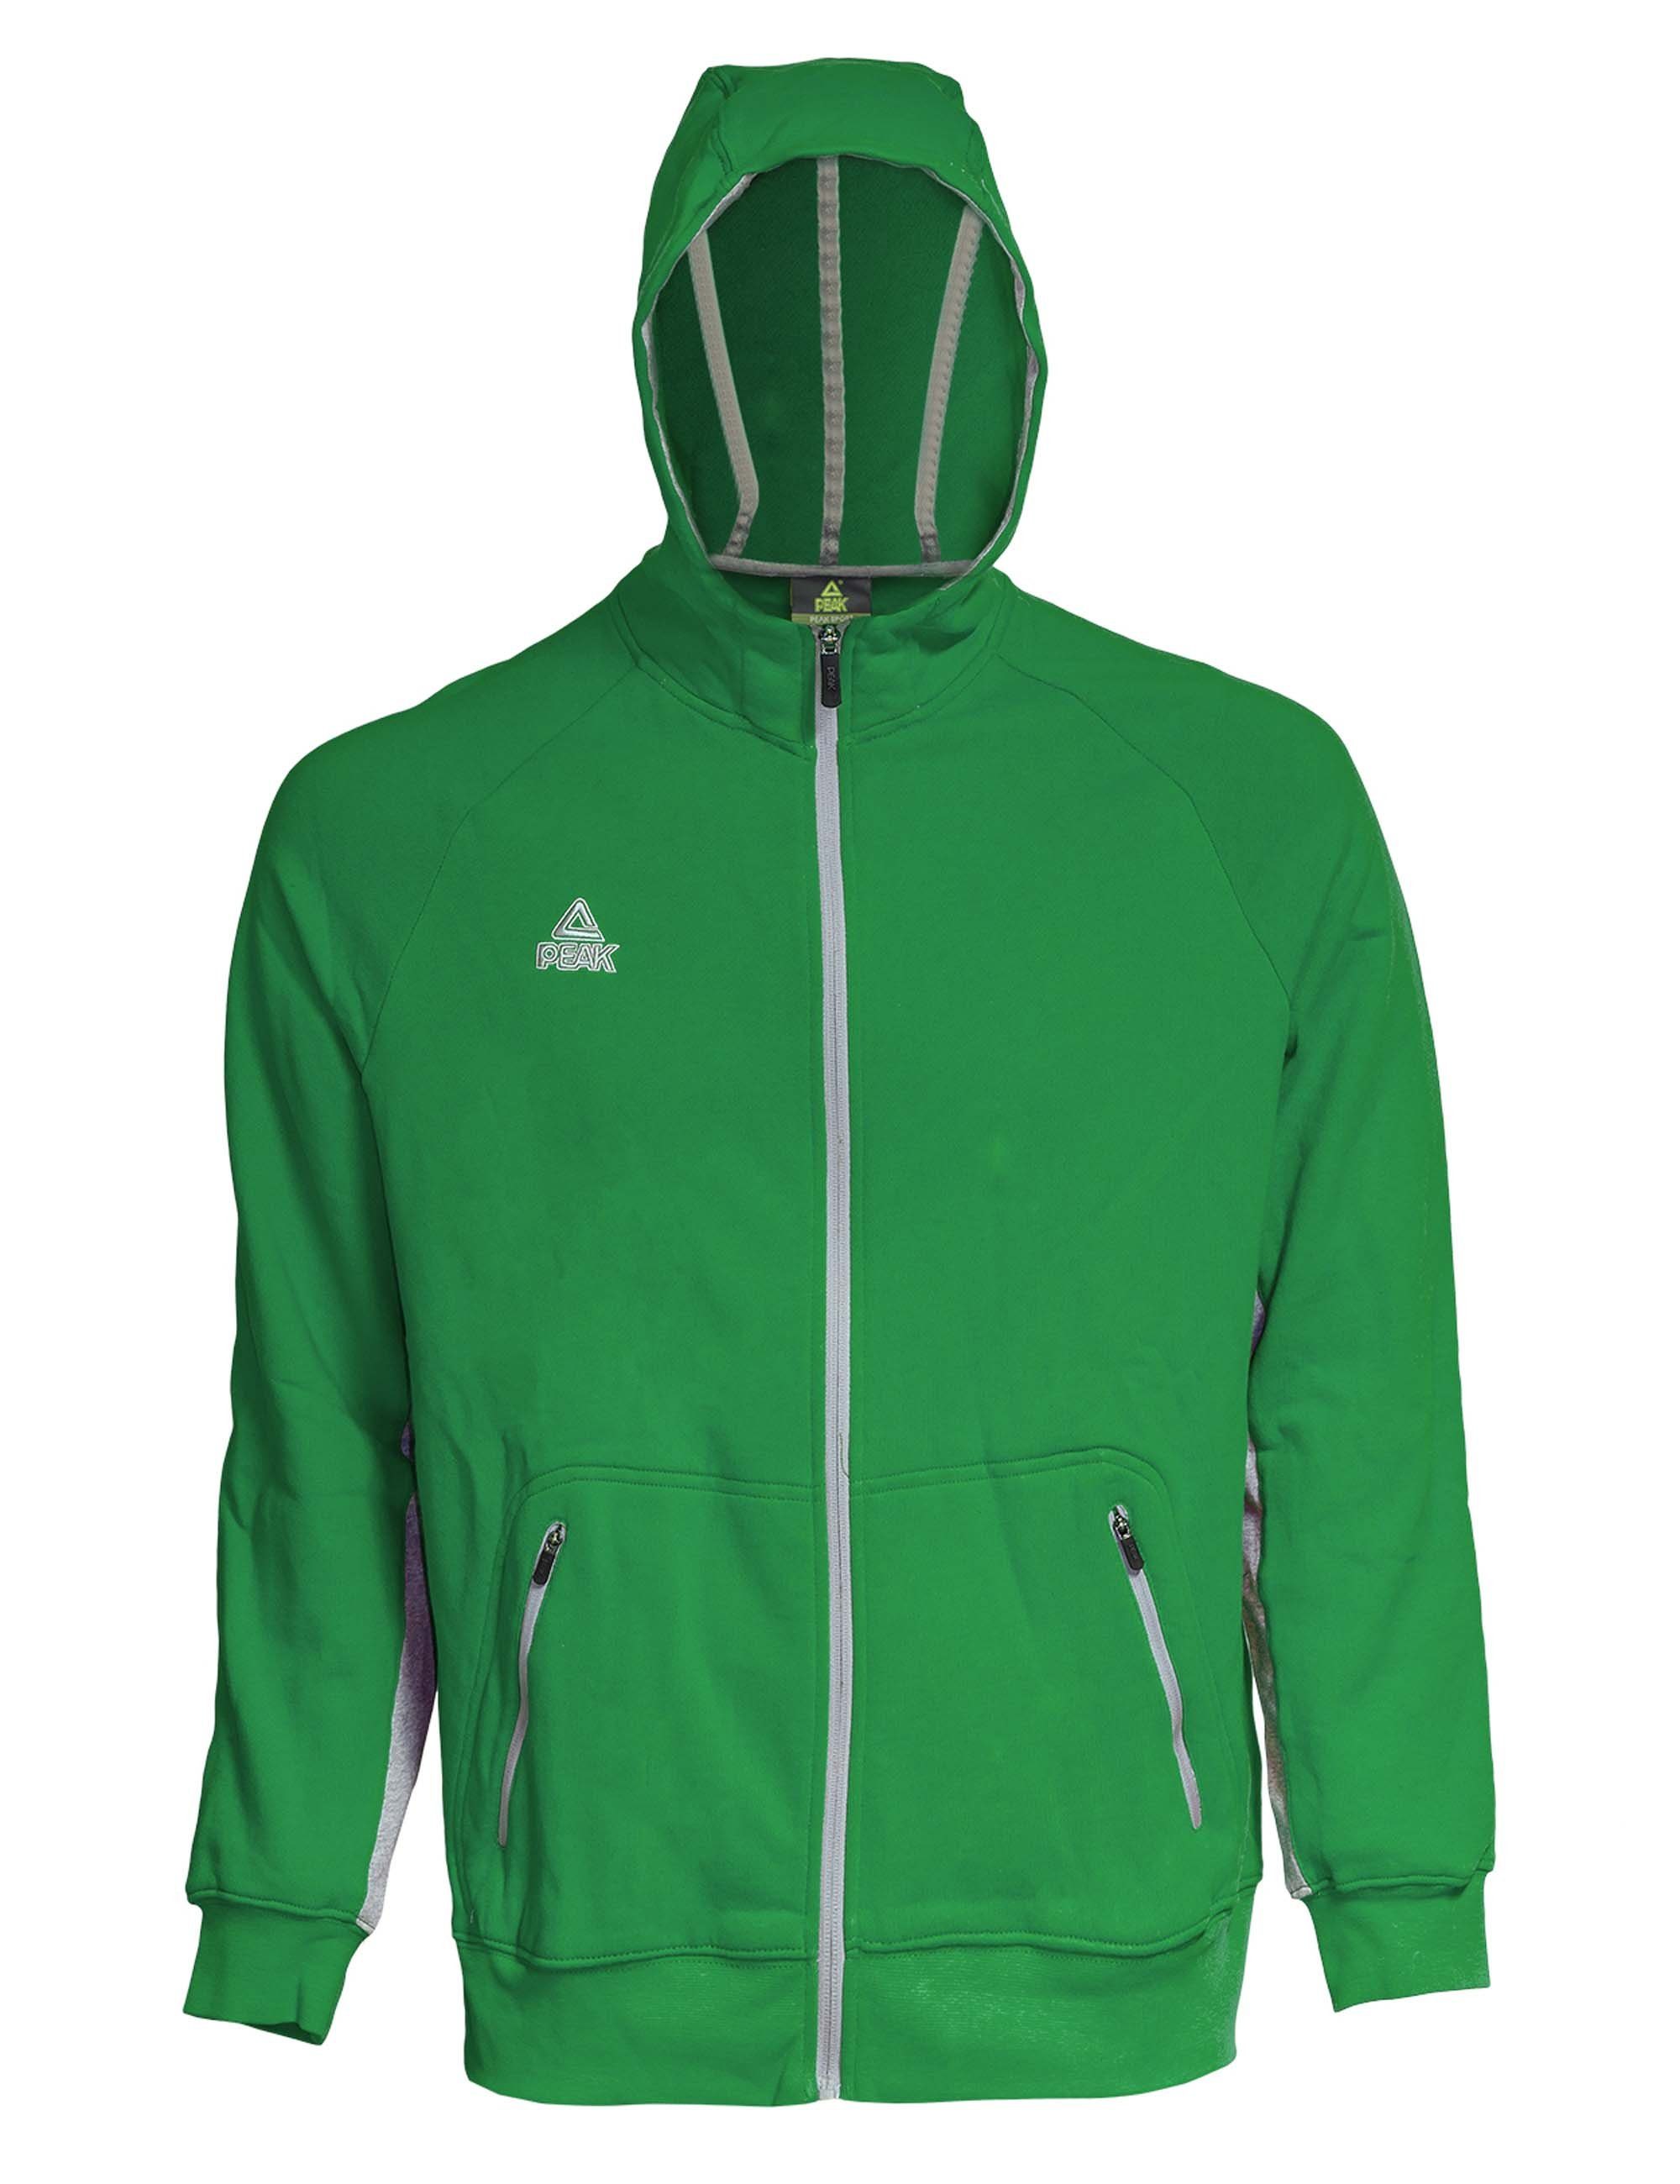 PEAK Sweatjacke Zip Hoody im sportlichen Look grün